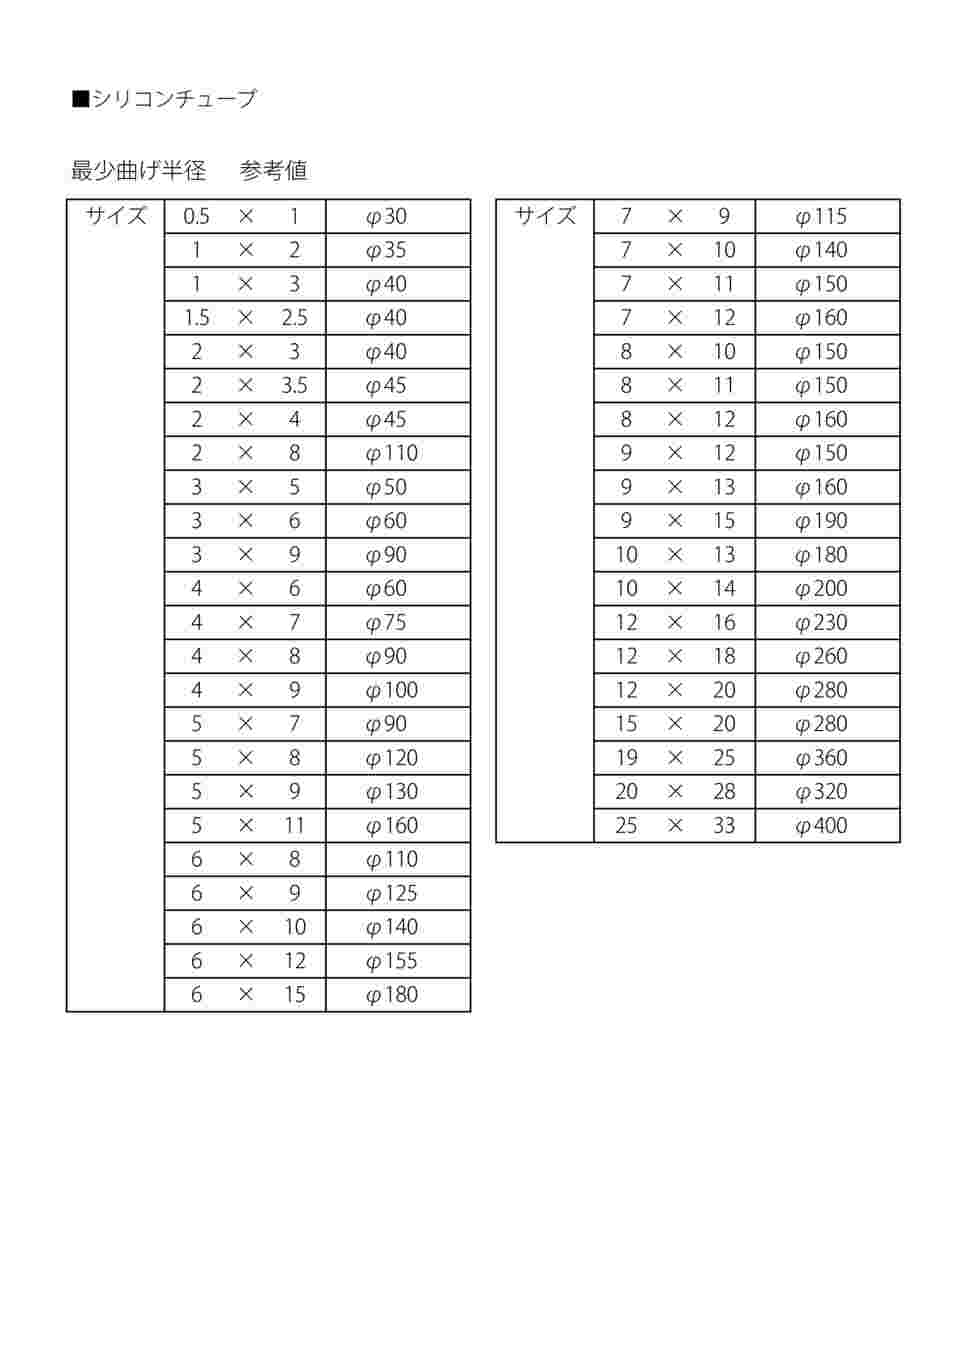 9-869-23 ラボラン(R)シリコンチューブ 10×14 1巻(11m) 【AXEL】 アズワン